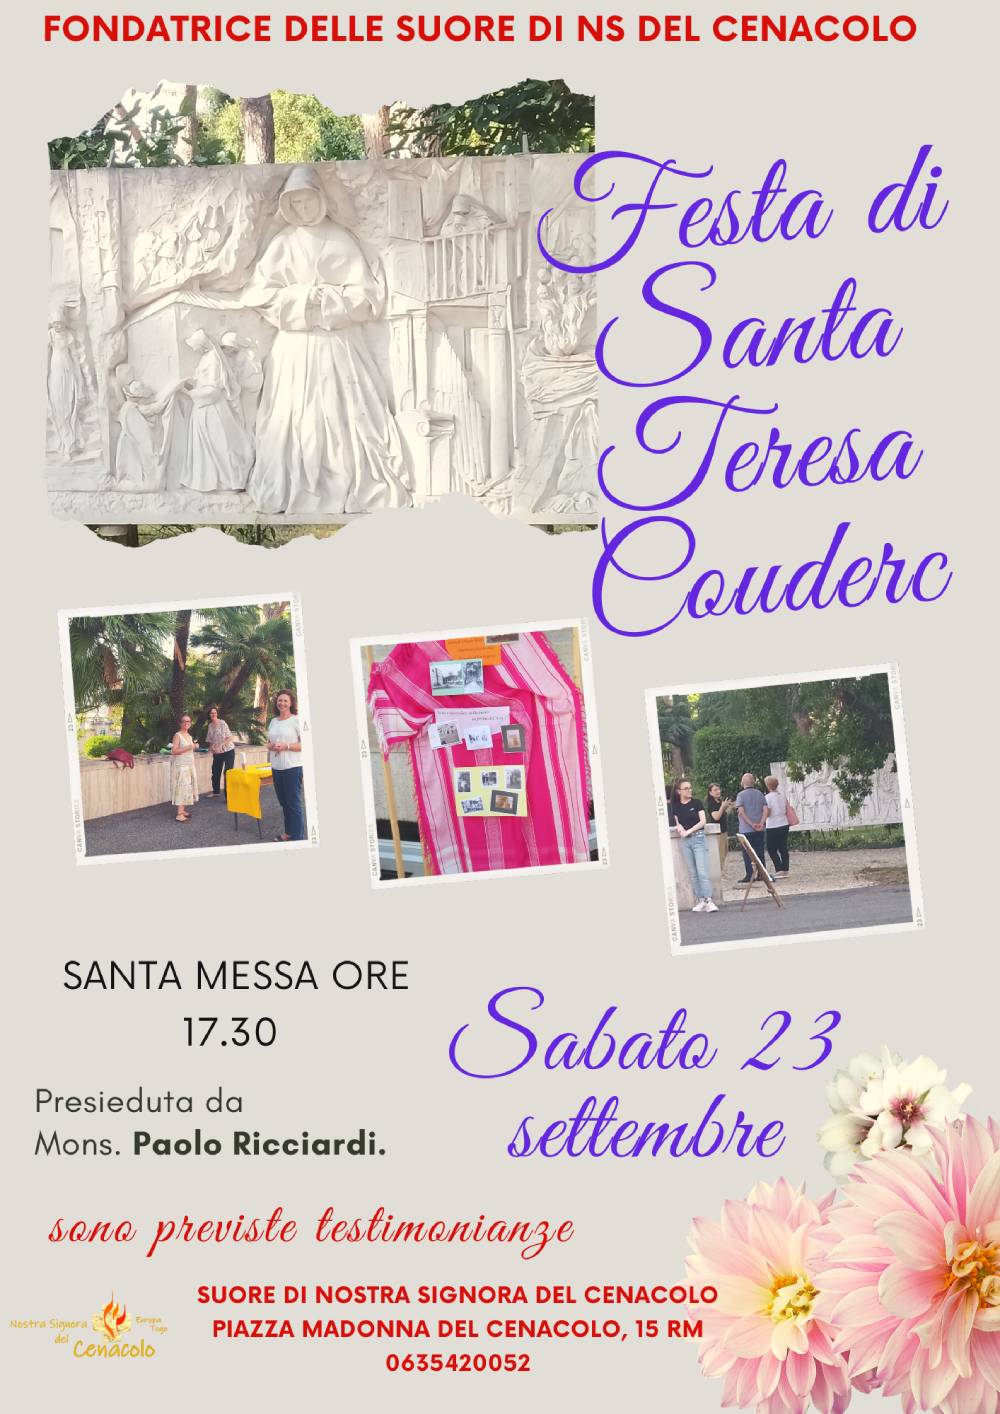 Invito Festa di Santa Teresa Couderc